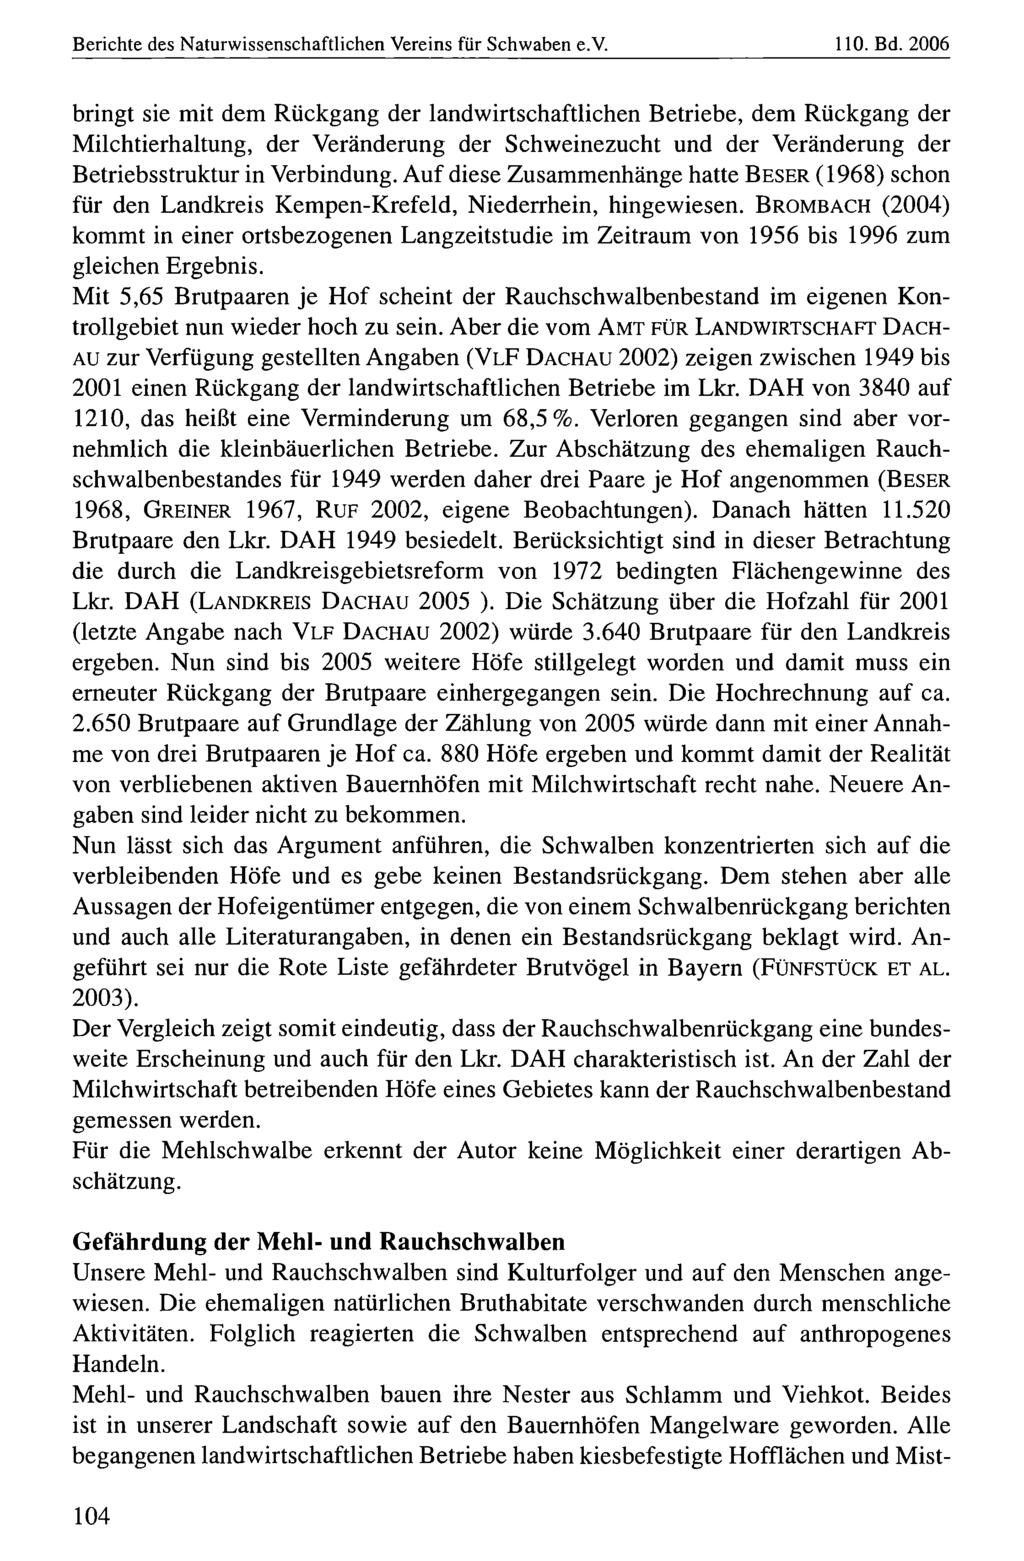 Berichte des Naturwissenschaftlichen Naturwissenschaftlicher Vereins für für Schwaben, download e.v. unter www.biologiezentrum.at 110. Bd.